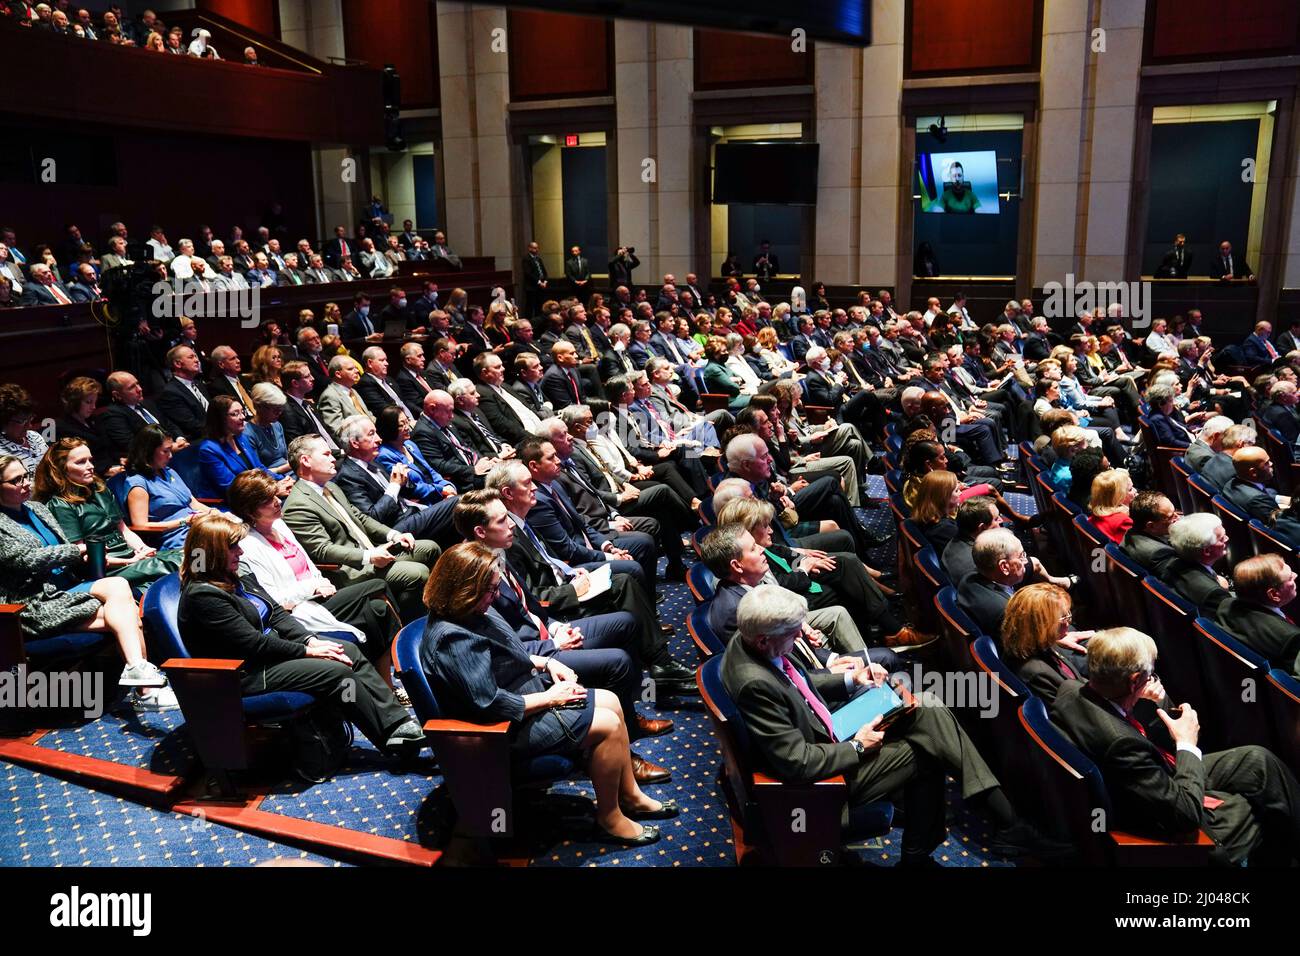 Der Präsident von Ukraineï¿, Volodymyr Zelenskiy, hält eine Videoansprache an Senatoren und Mitglieder des Repräsentantenhauses, die am 16. März 2022 im Kongresssaal des Capitol Visitor Center im US-Kapitol in Washington, USA, versammelt sind. Kredit: Sarah Silbiger / Pool über CNP Stockfoto